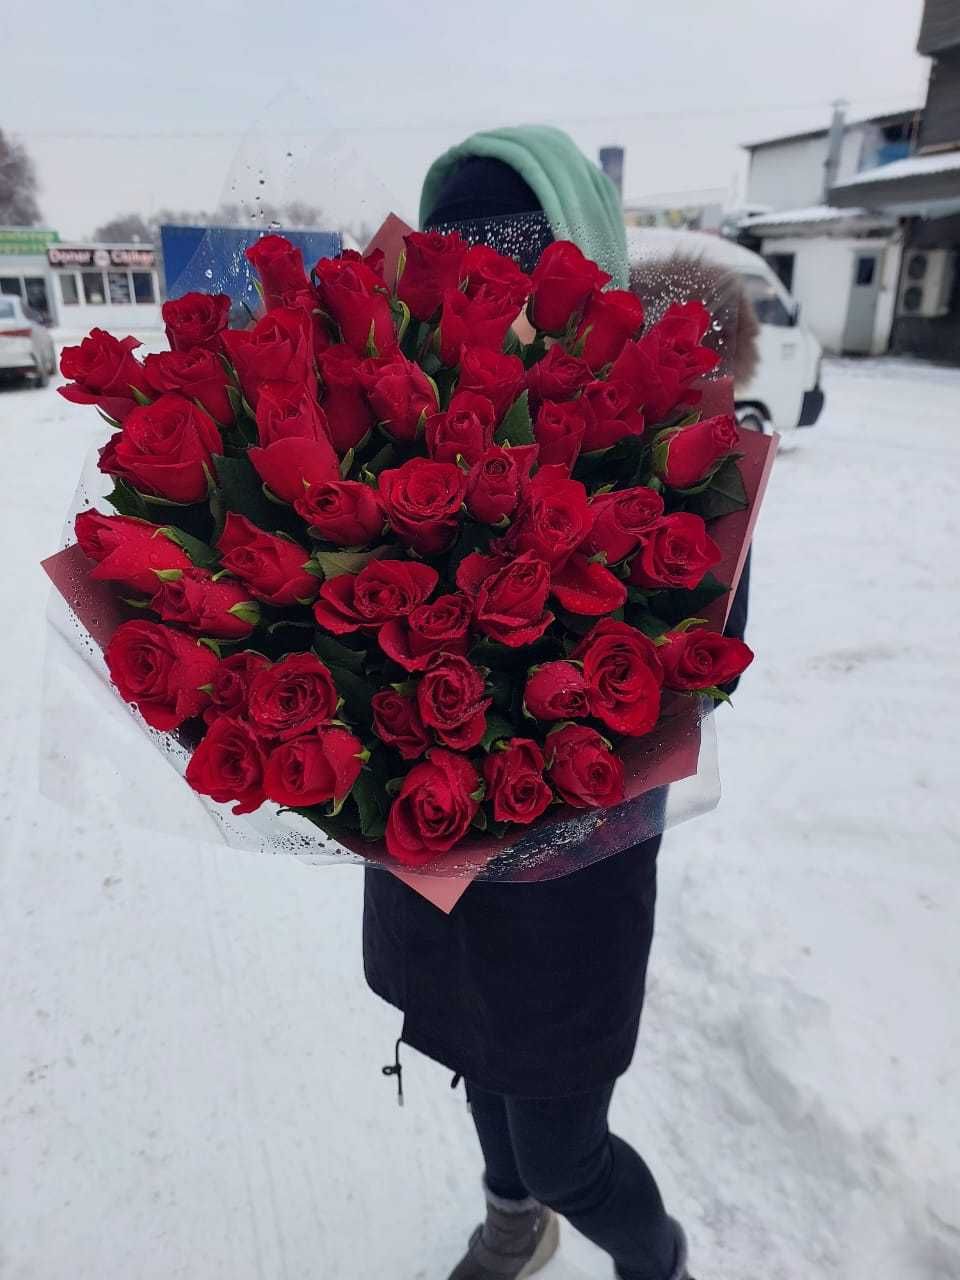 51 роза 25500 тг Цветы Алматы с доставкой